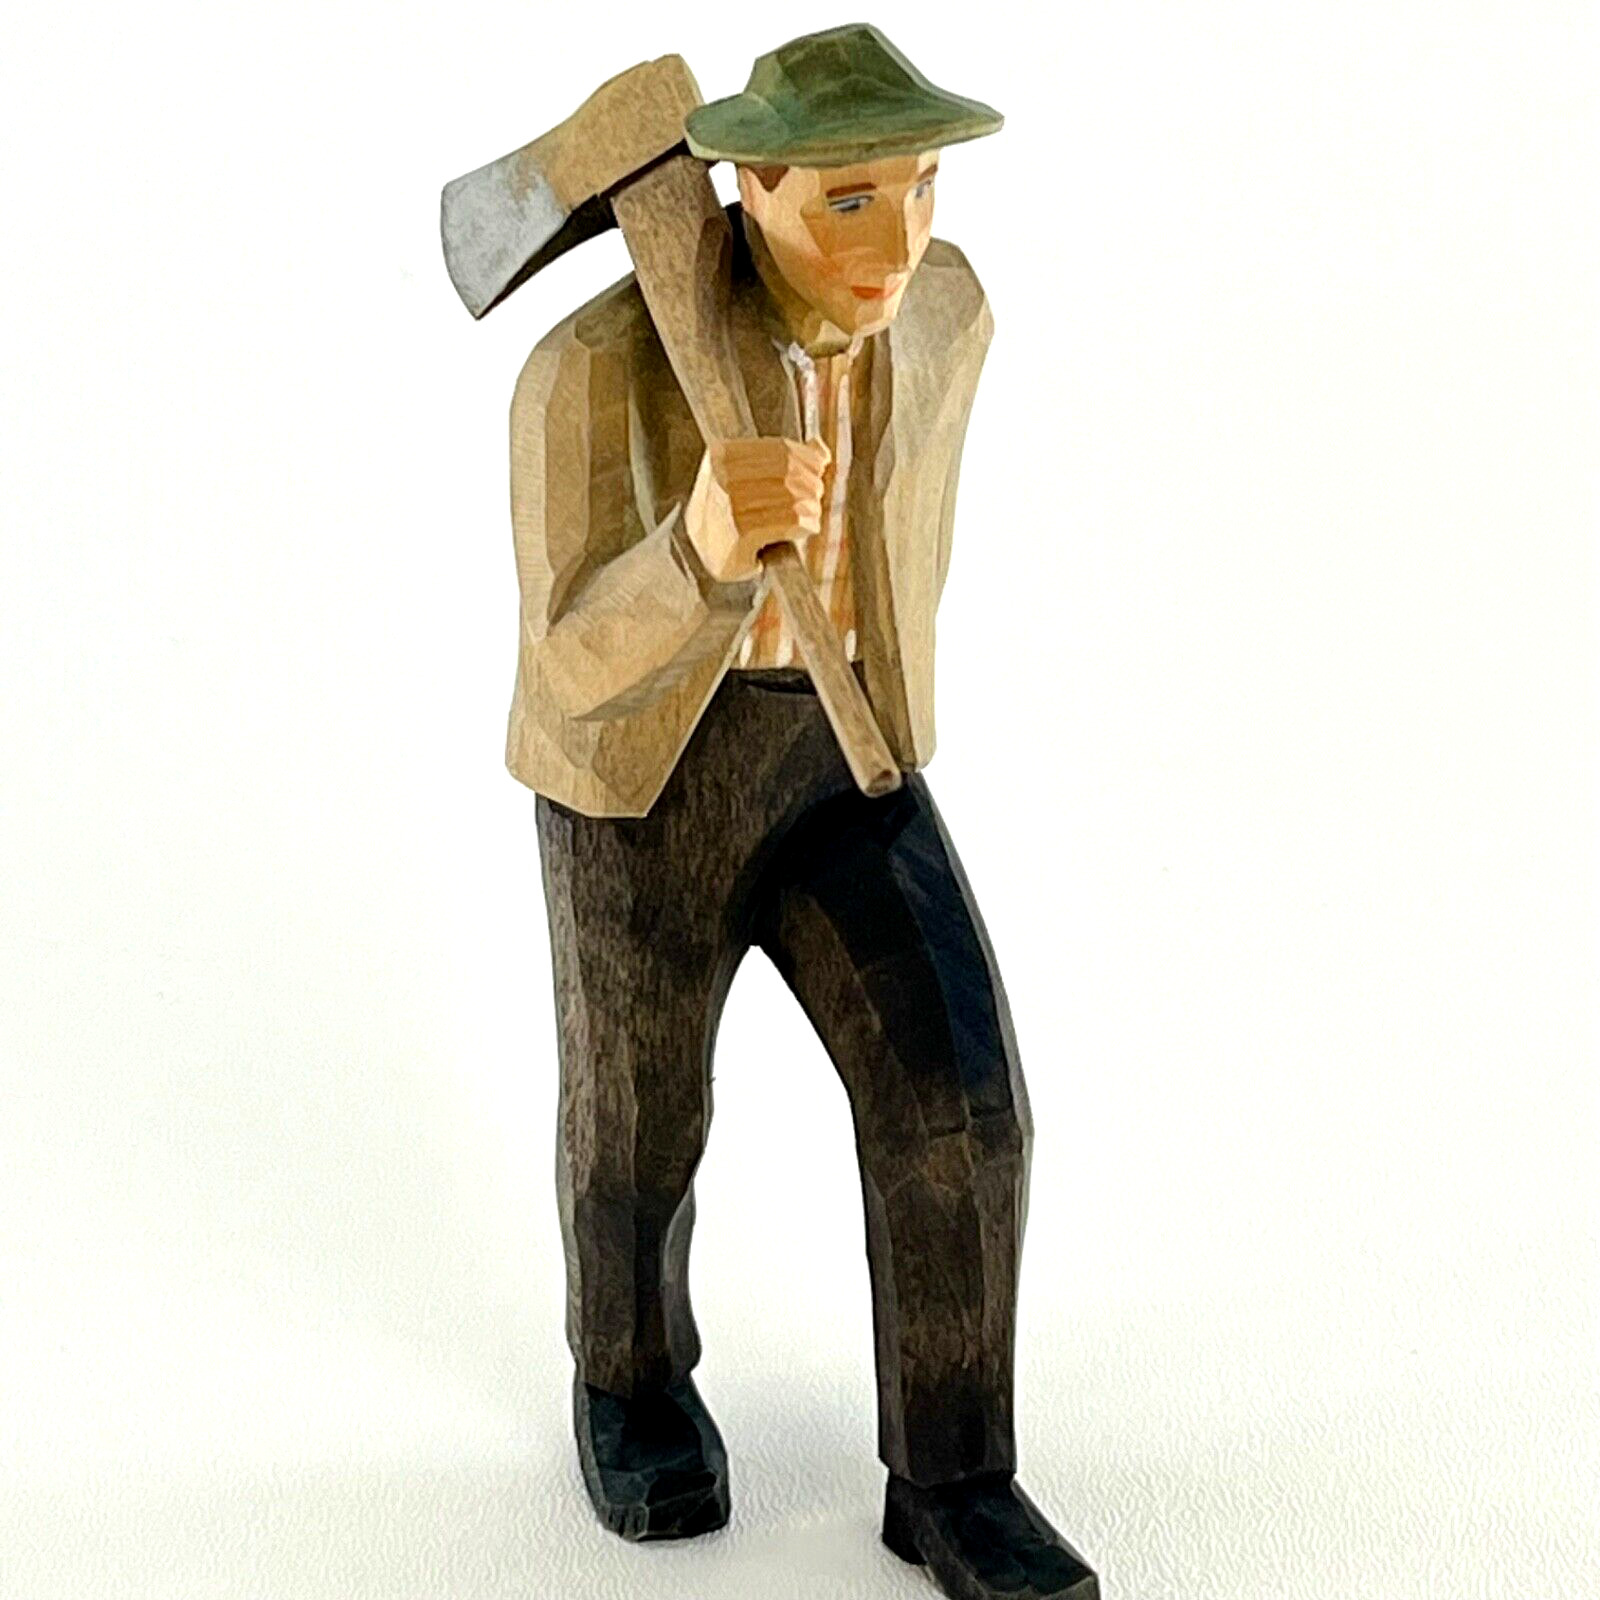 Vintage Hand Carved Alpine Woodsman with Axe Figurine Switzerland 1950s Folk Art